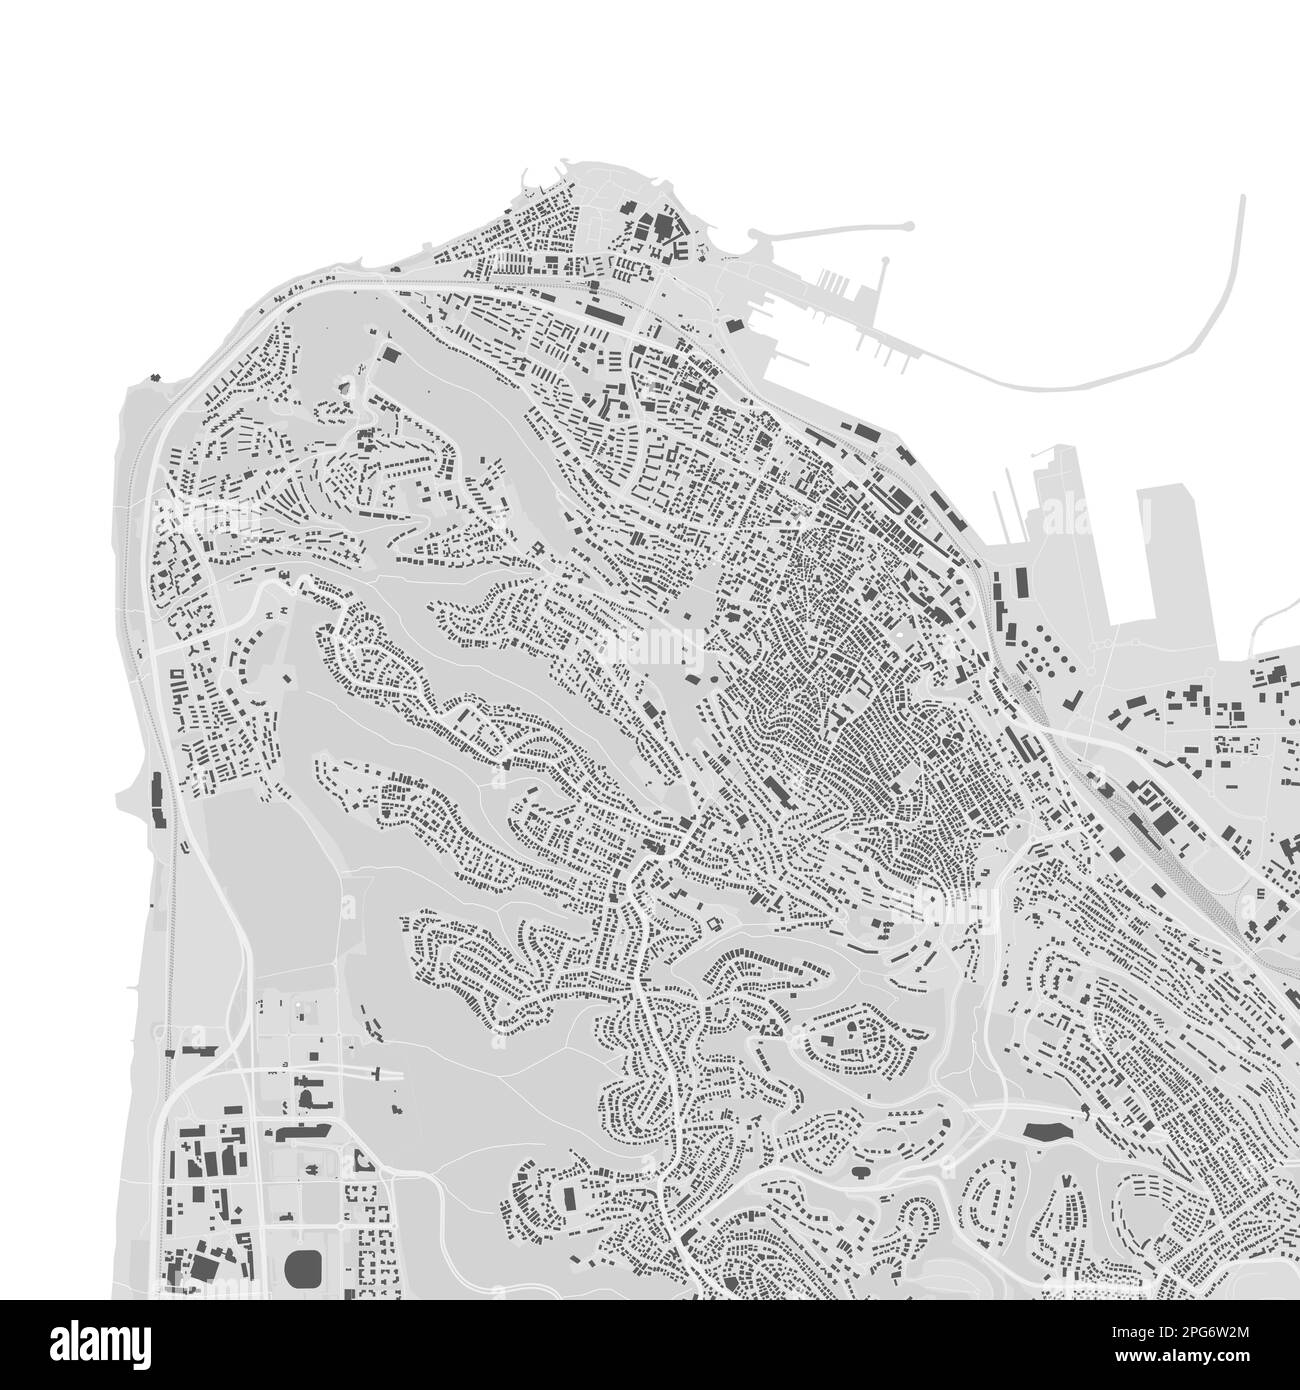 Carte vectorielle de la ville urbaine de Haïfa. Illustration vectorielle, affiche graphique en noir et blanc à échelle de gris Haifa. image de carte routière avec routes, zone métropolitaine Illustration de Vecteur